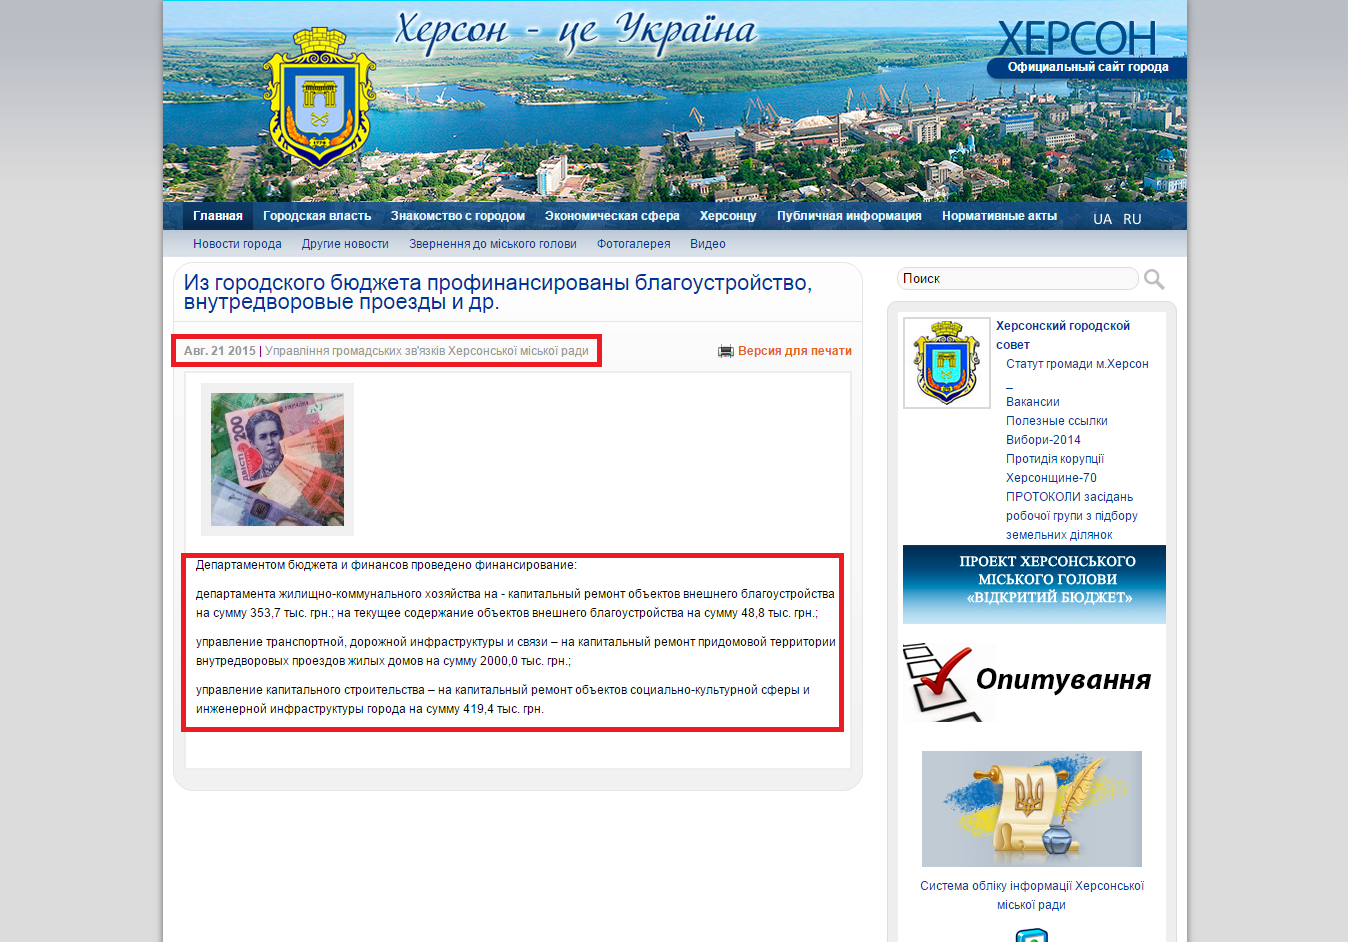 http://www.city.kherson.ua/news_detail/iz-gorodskogo-byudzheta-profinansirovany-blagoustroystvo-vnutredvorovye-proezdy-i-dr